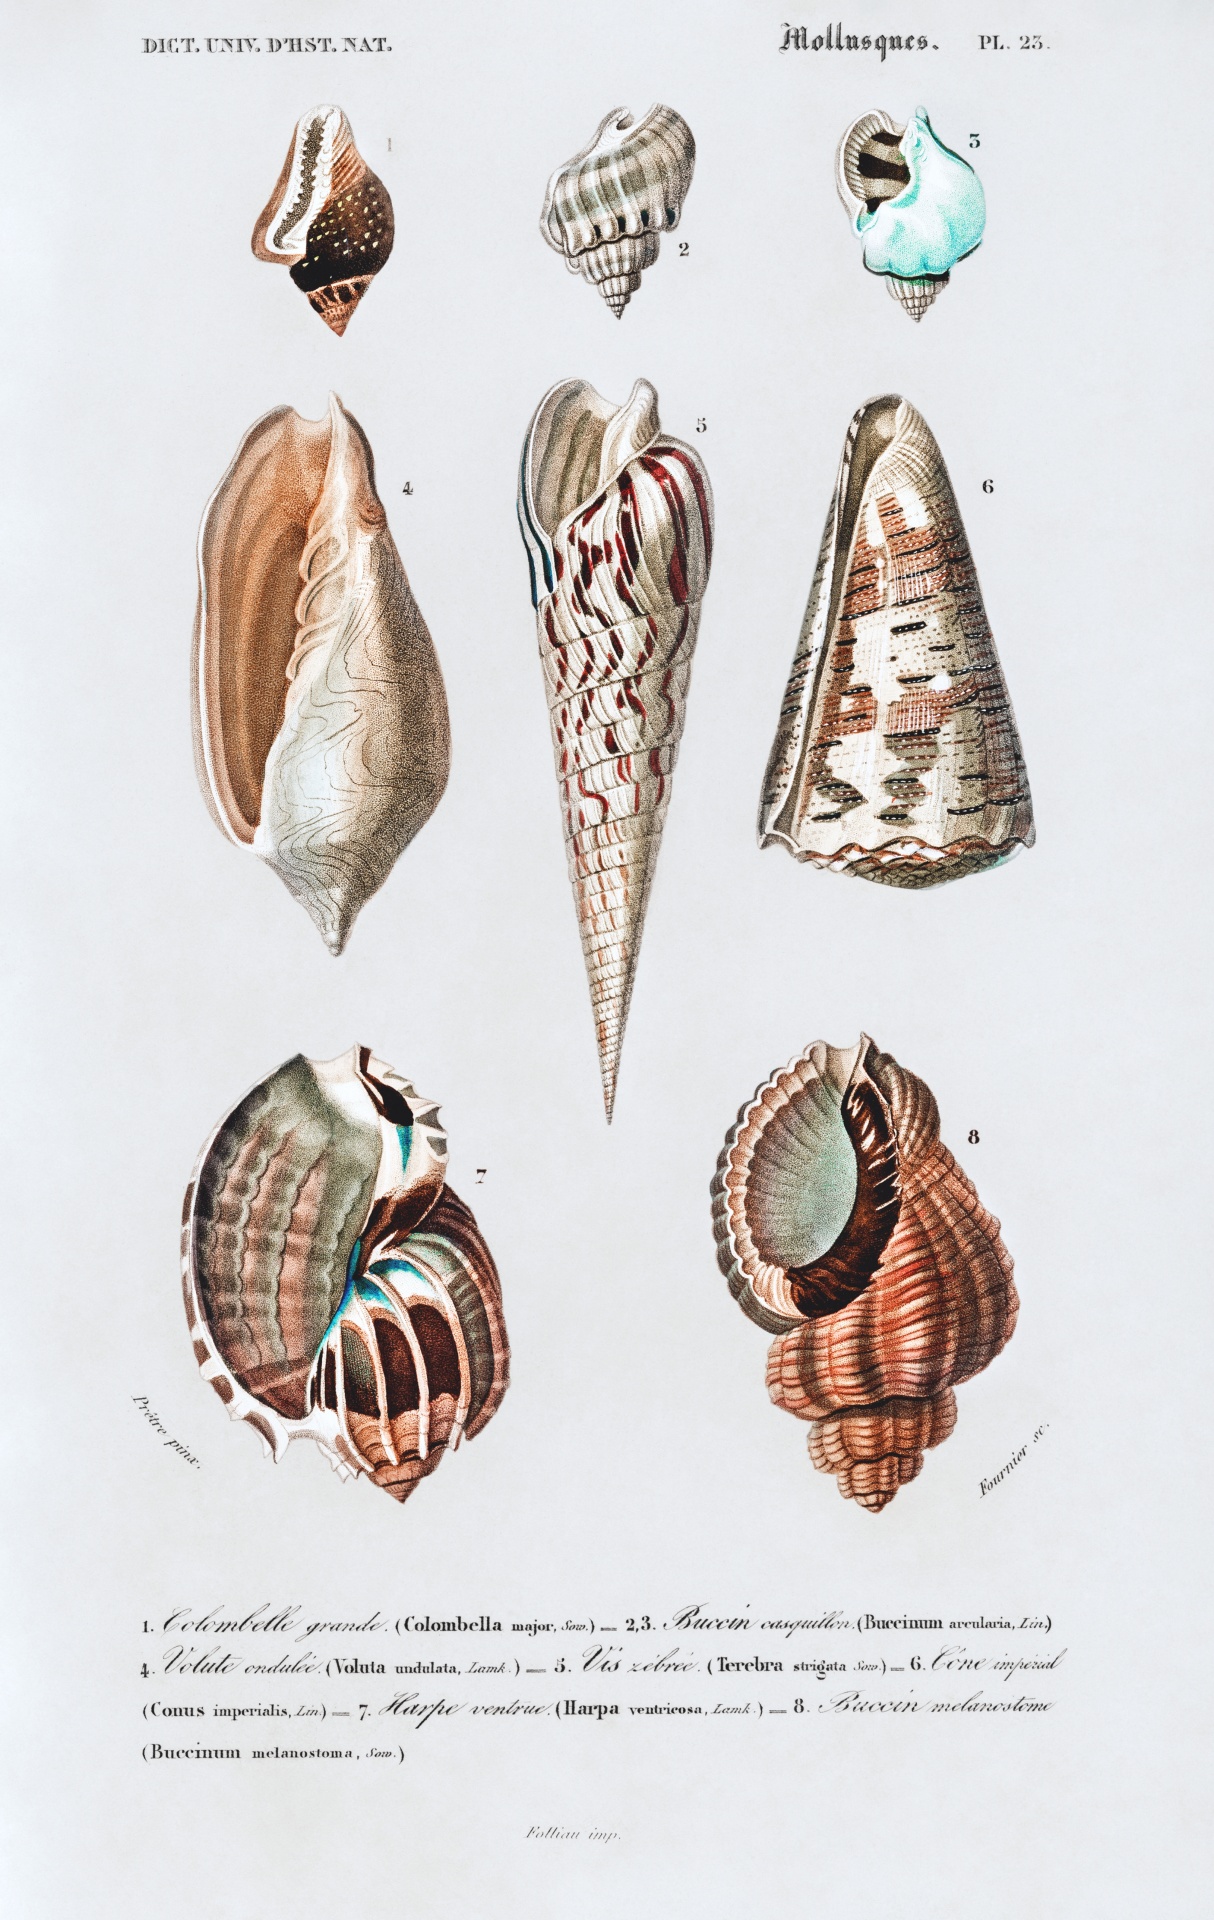 Seashells Tropical Vintage Art